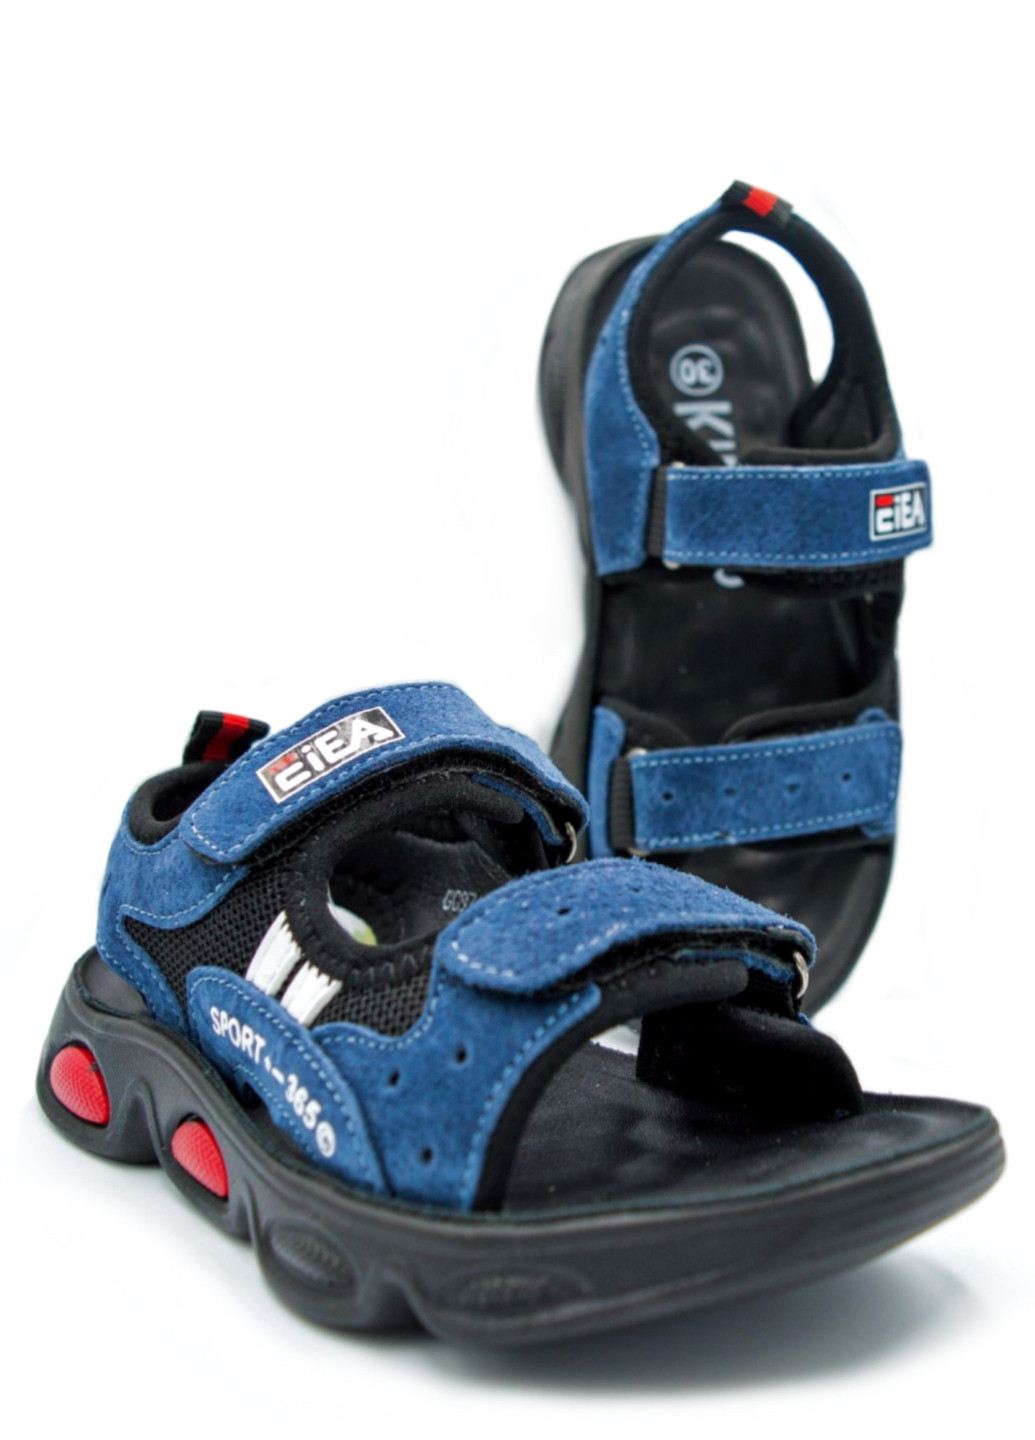 Синие спортивные детские сандалии для мальчика Kimbo-O на липучке